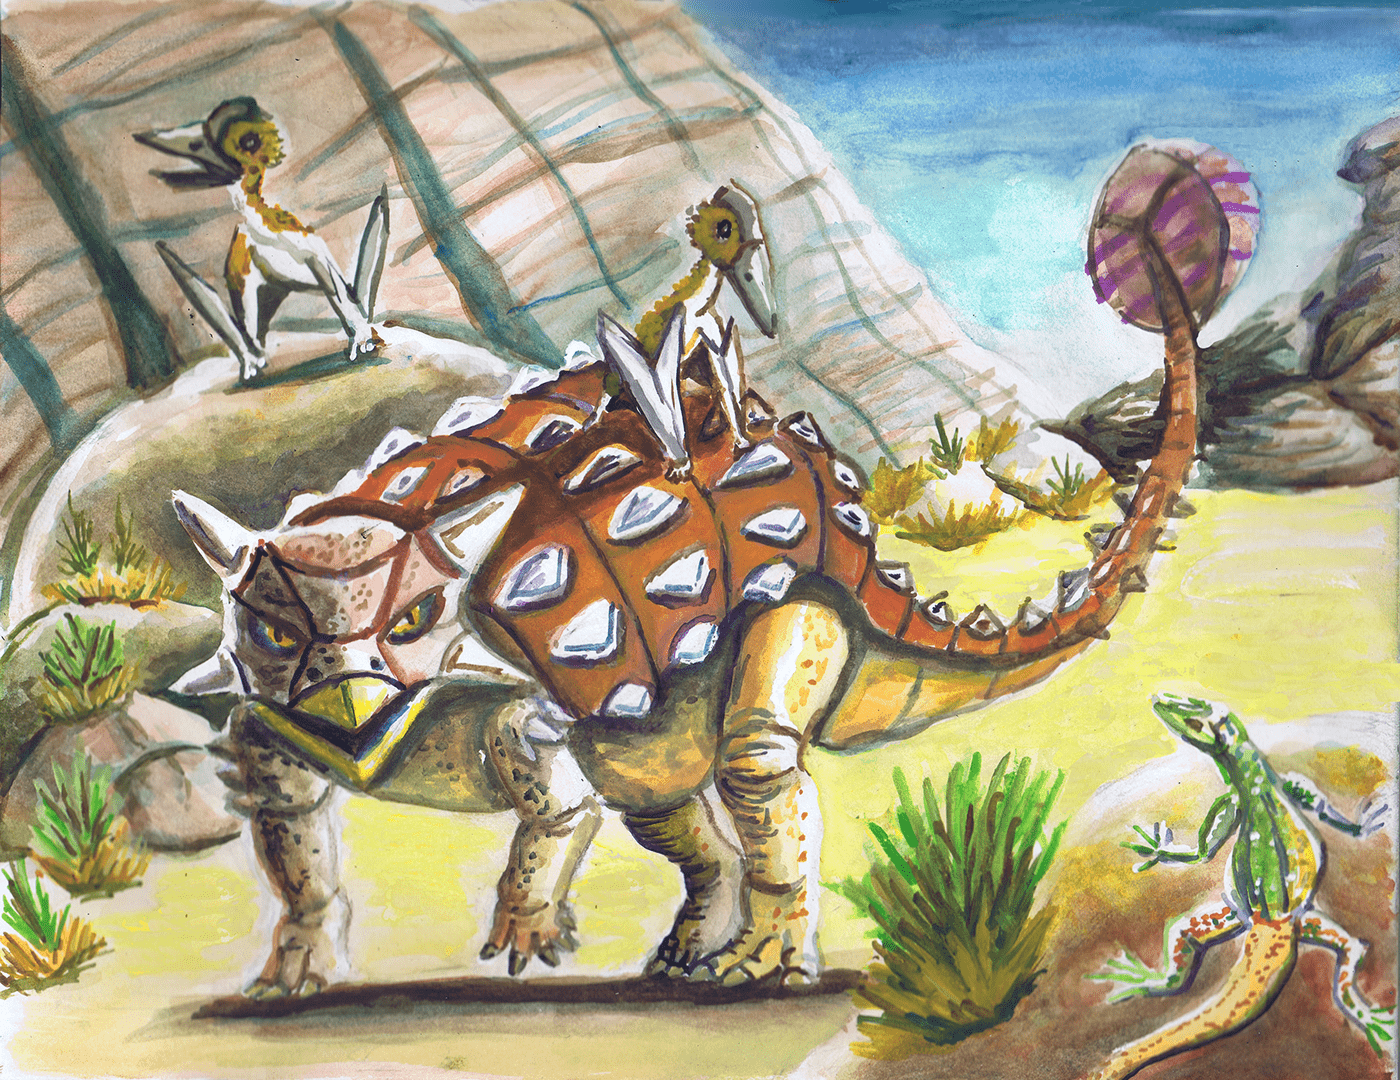 ankylosaurus
